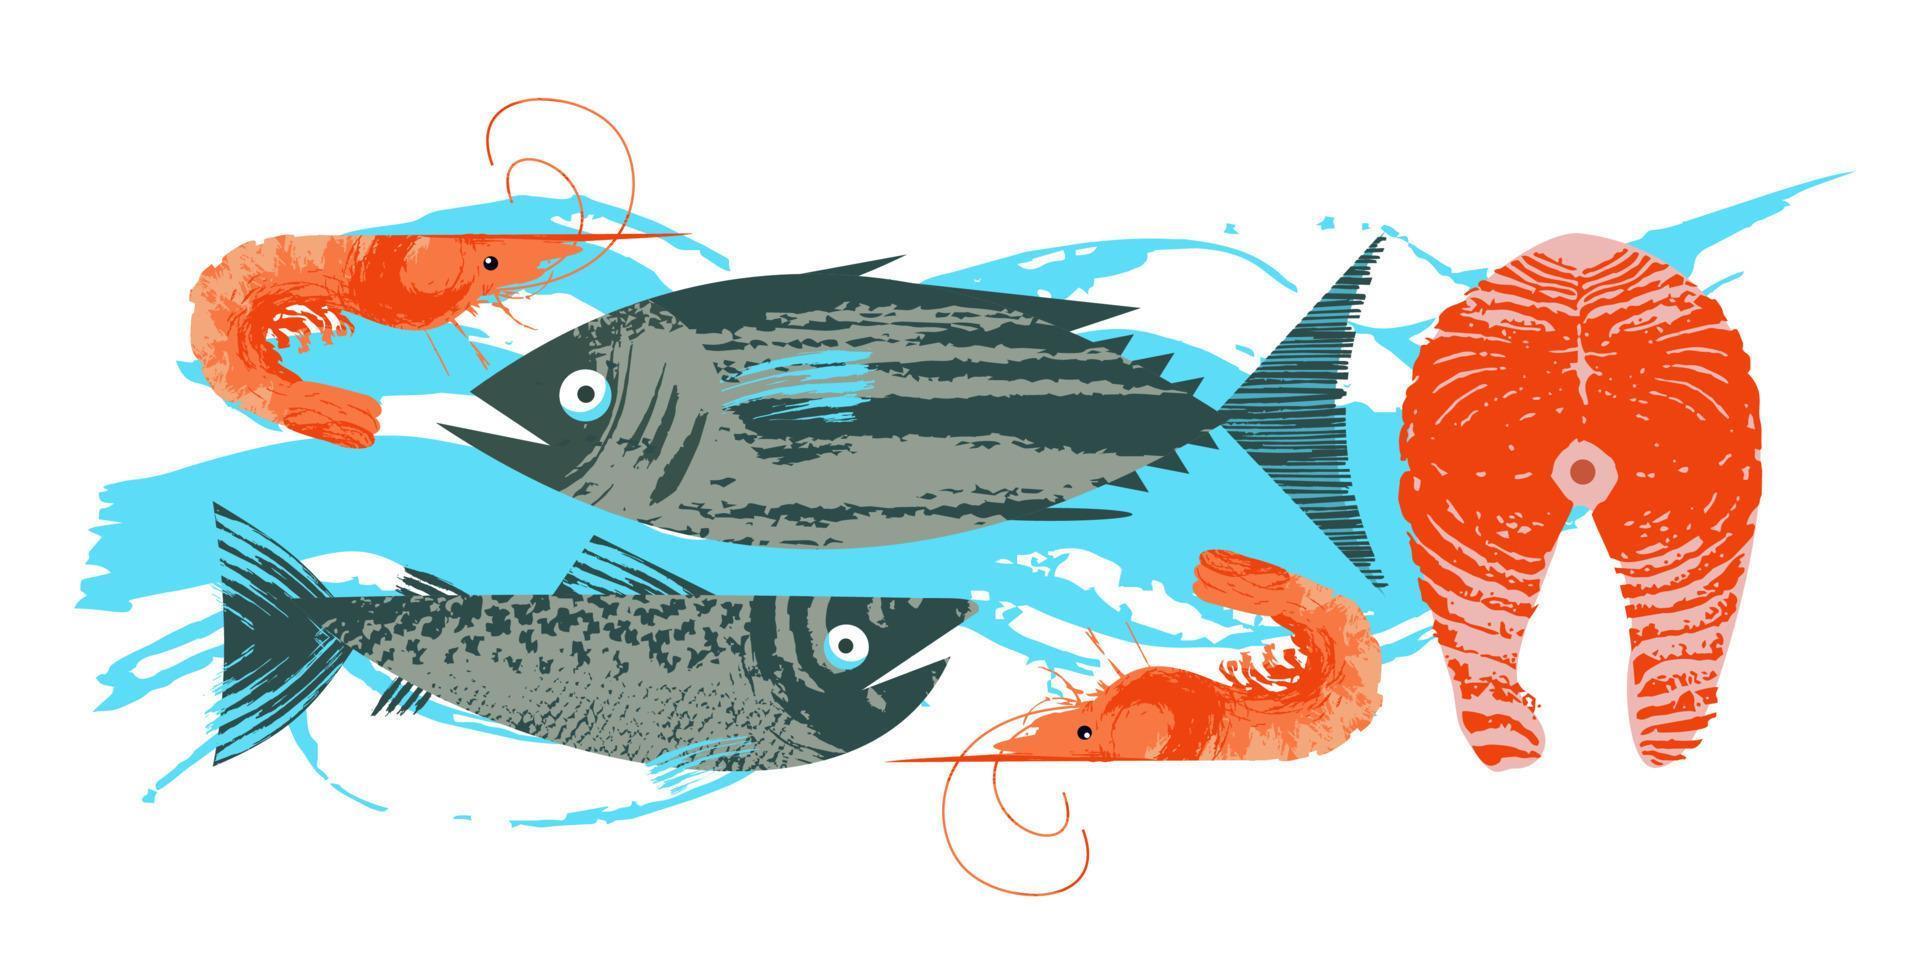 skaldjur. fisk. färgglad vektorillustration, en samling bilder av olika fiskar och räkor med en unik handritad vektorstruktur. vektor